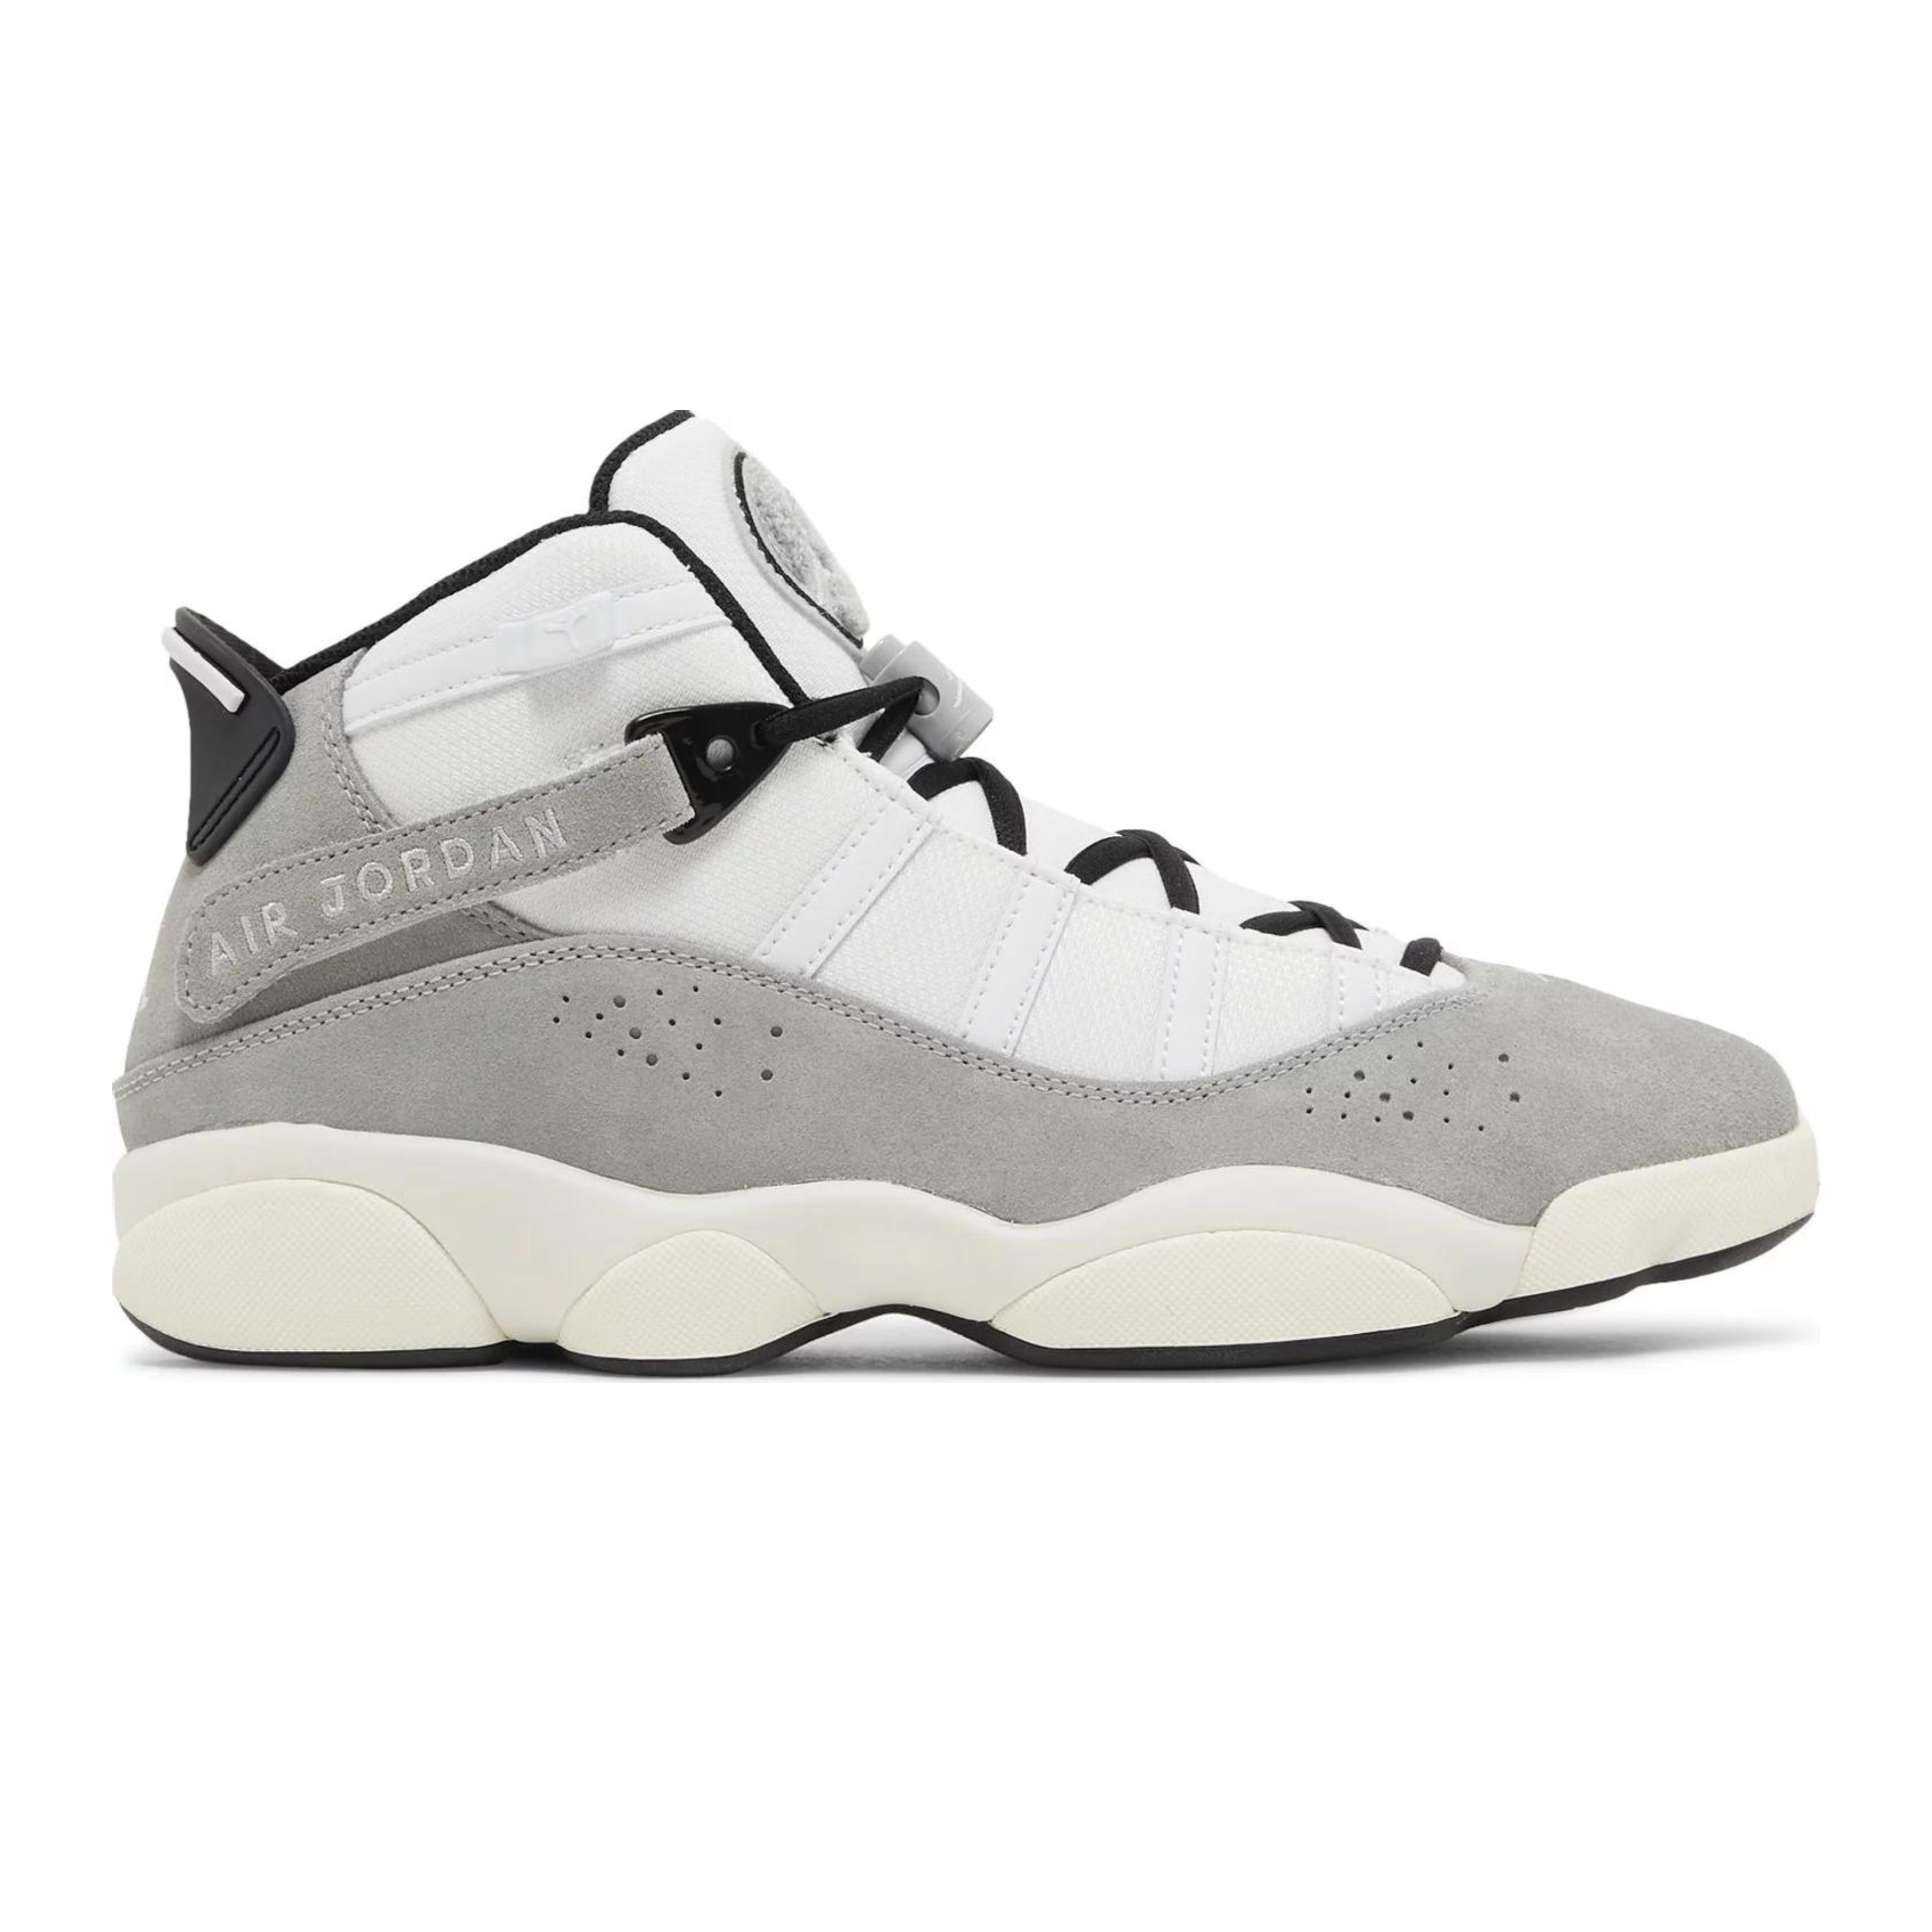 Jordan 6 Rings Cement Grey